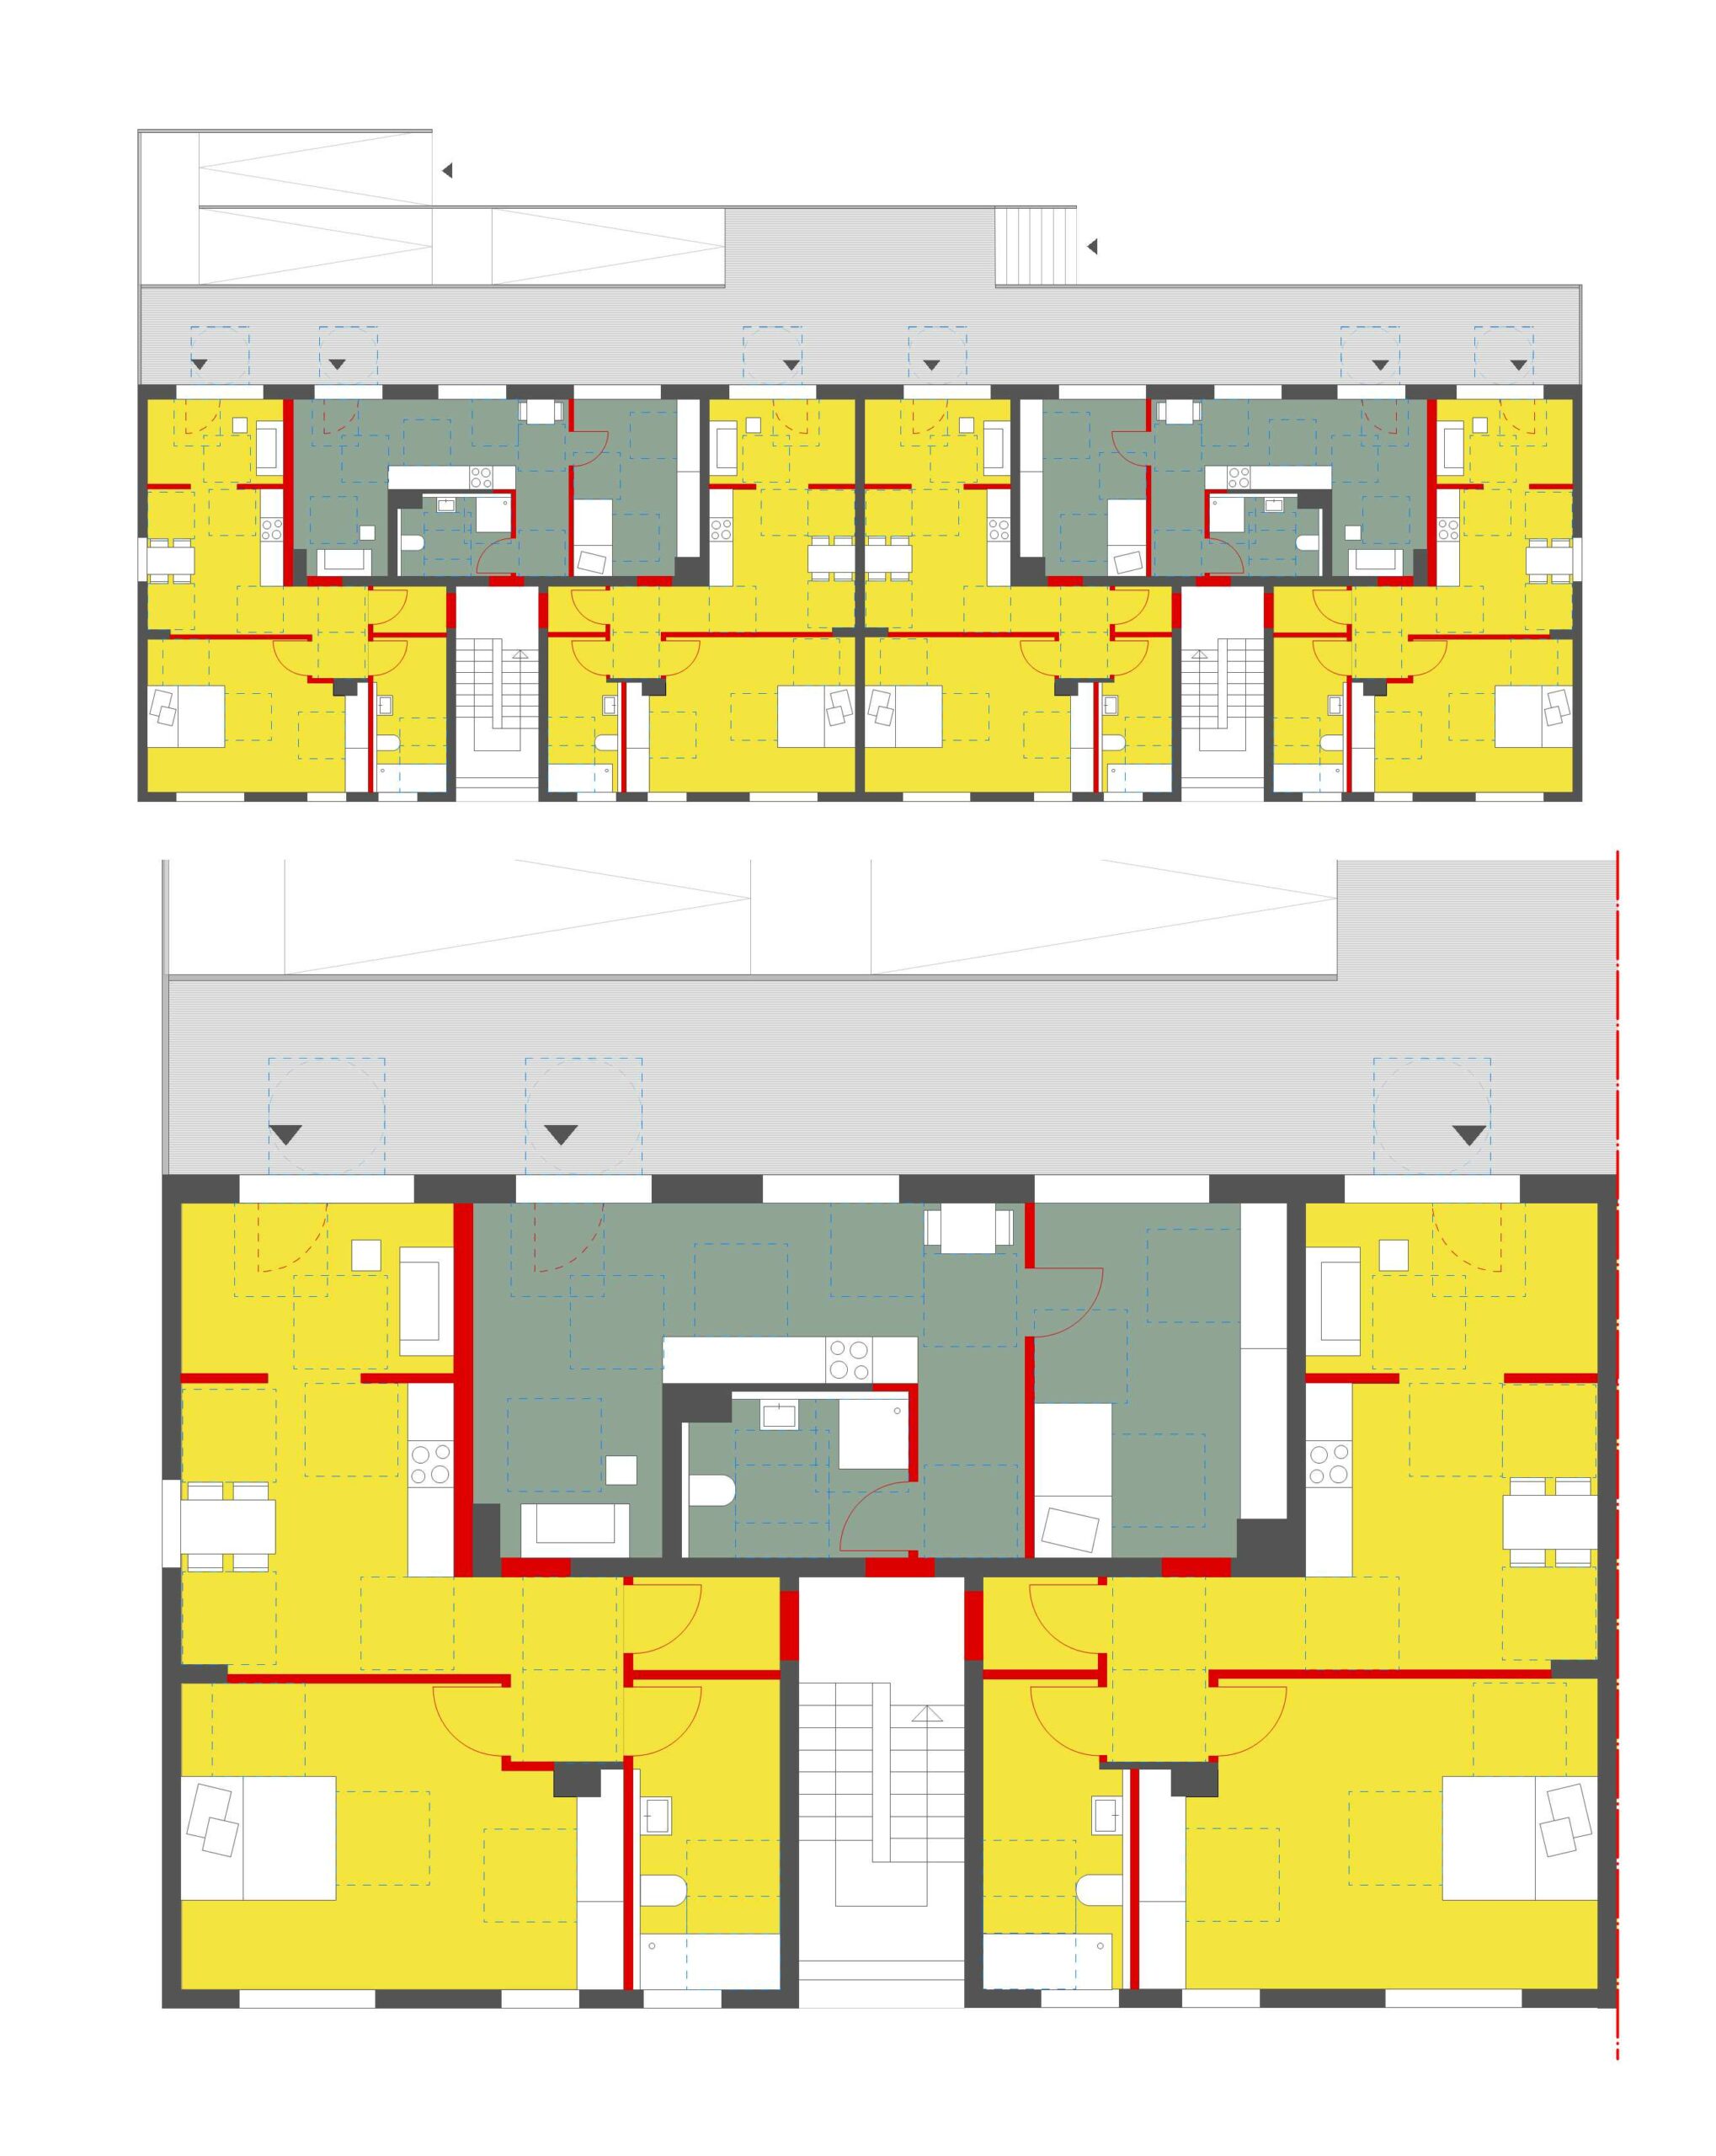 Abbildung 2: Szenario1 – Grundriss mit Rampe © werkum